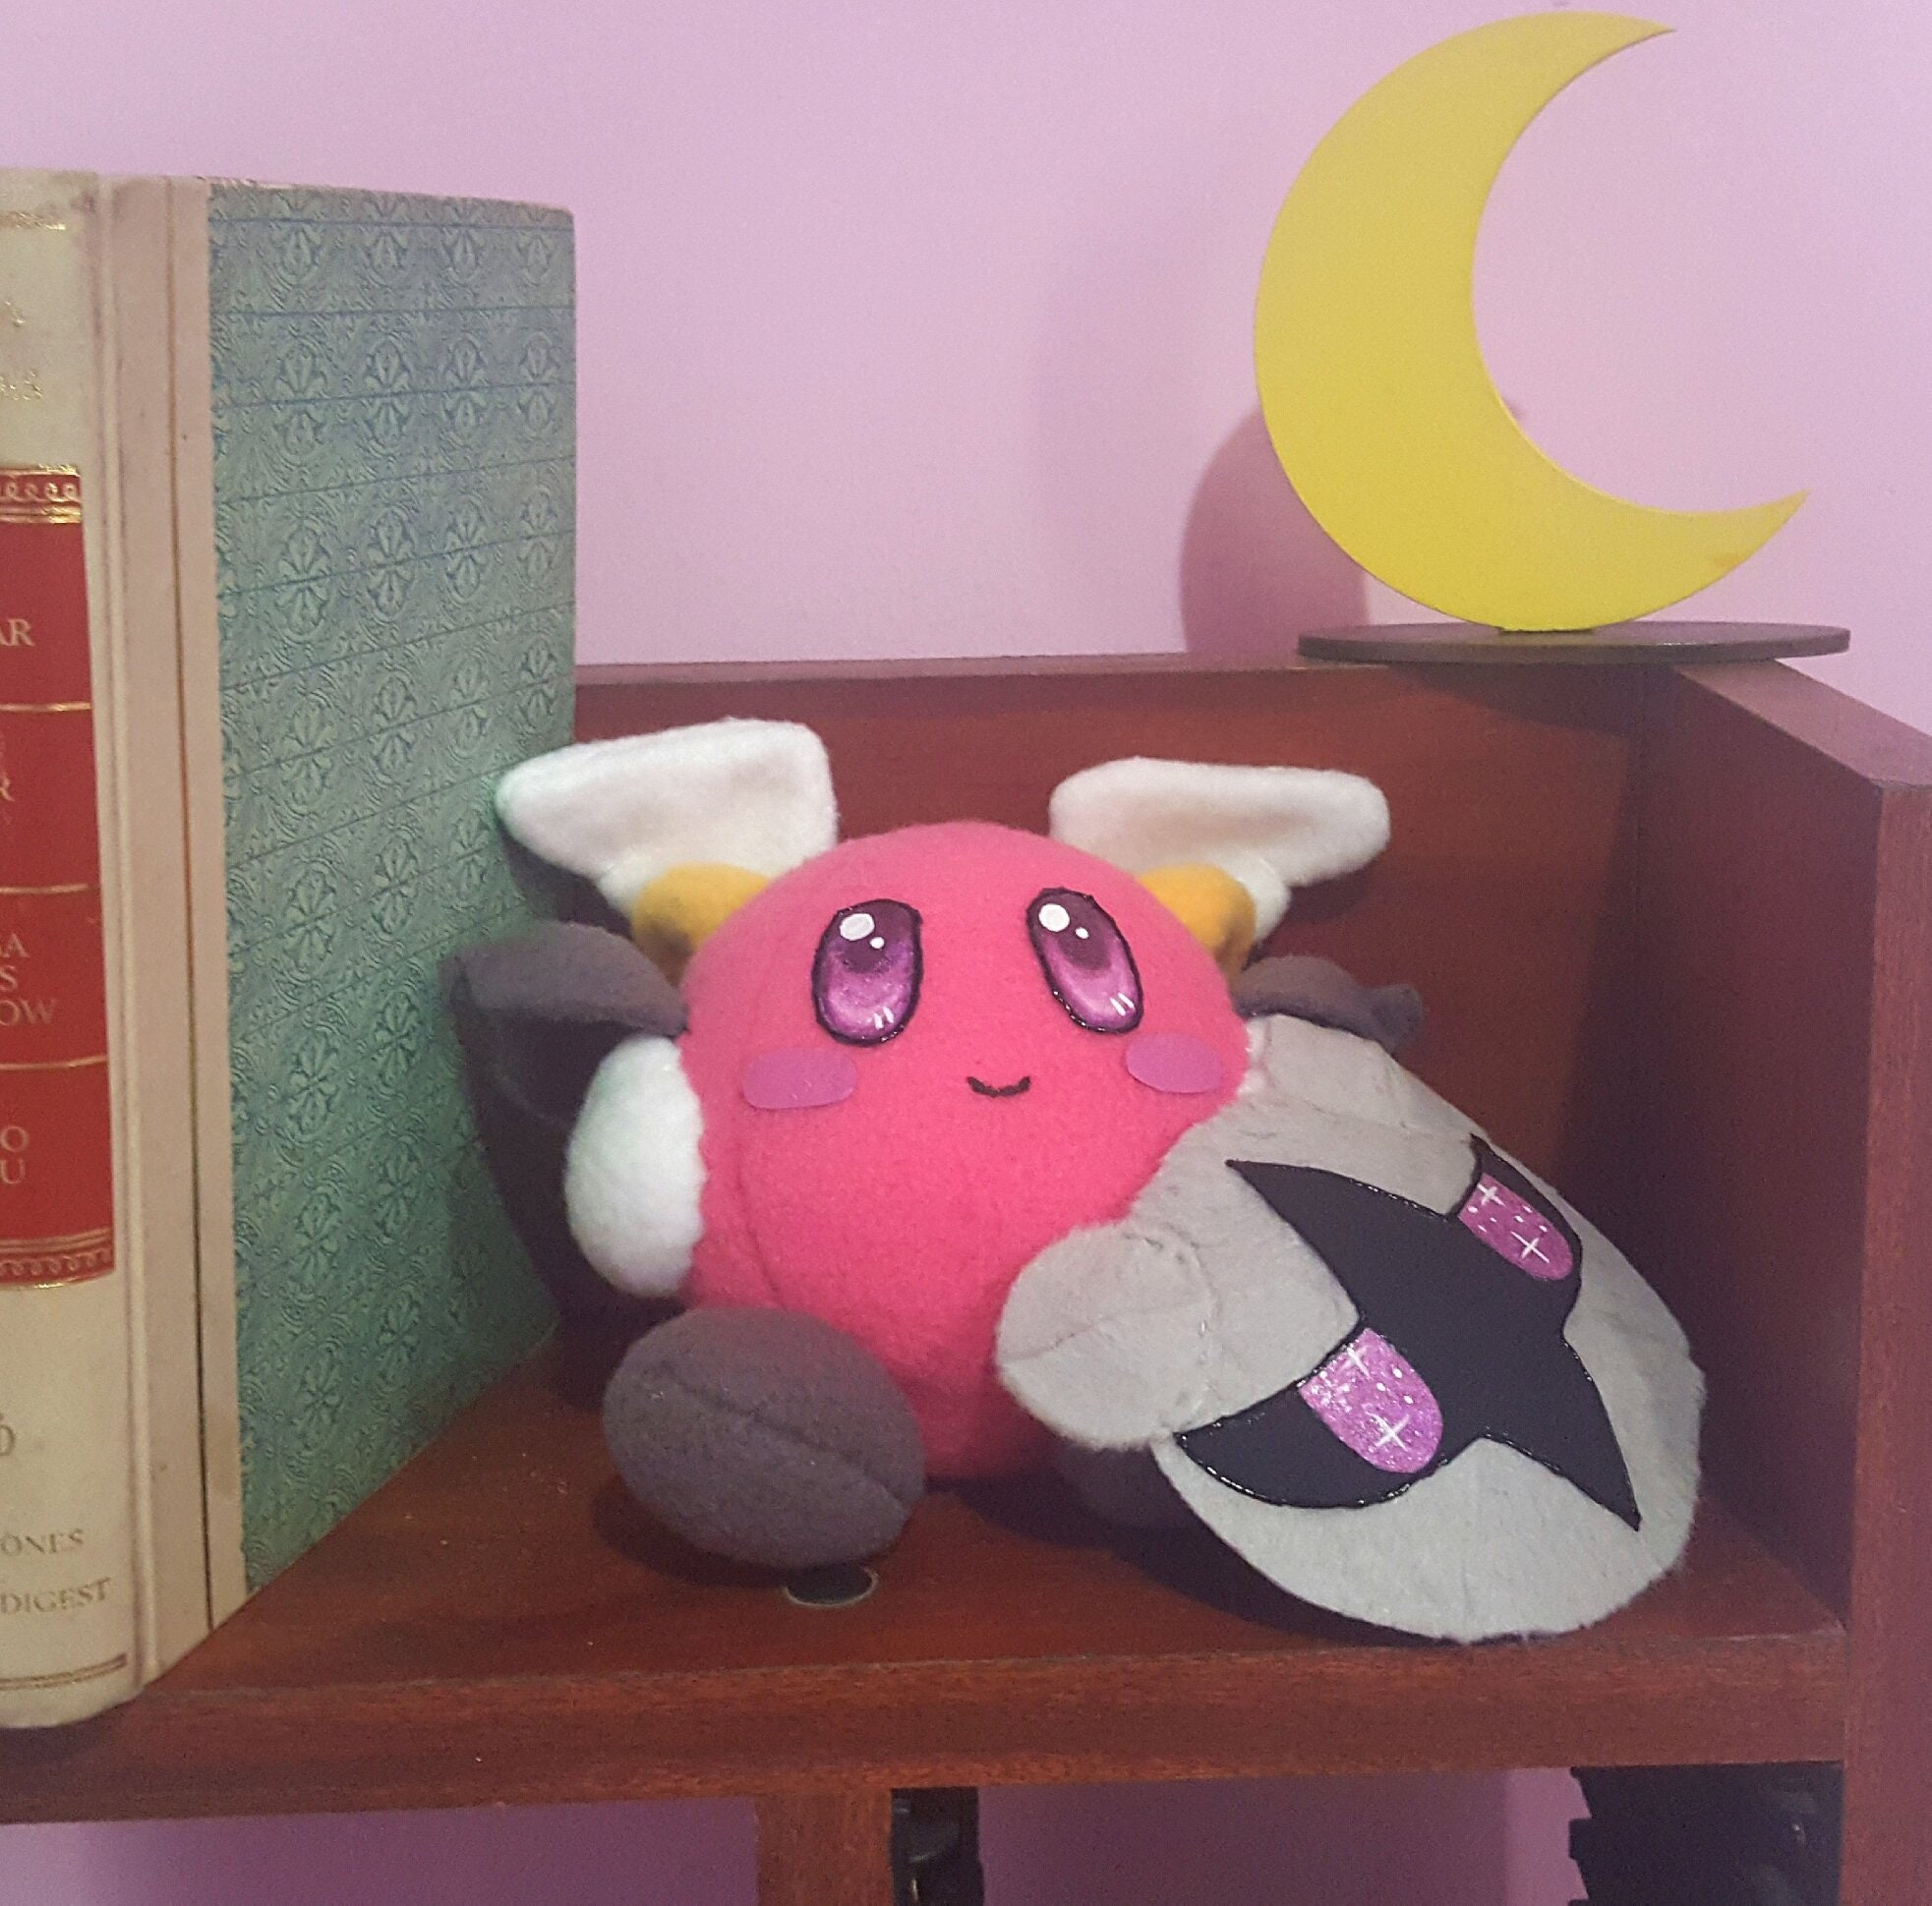 RCTOWN!!2023!!Kirby Adventure Plush Doll Meta Knight Soft Stuffed